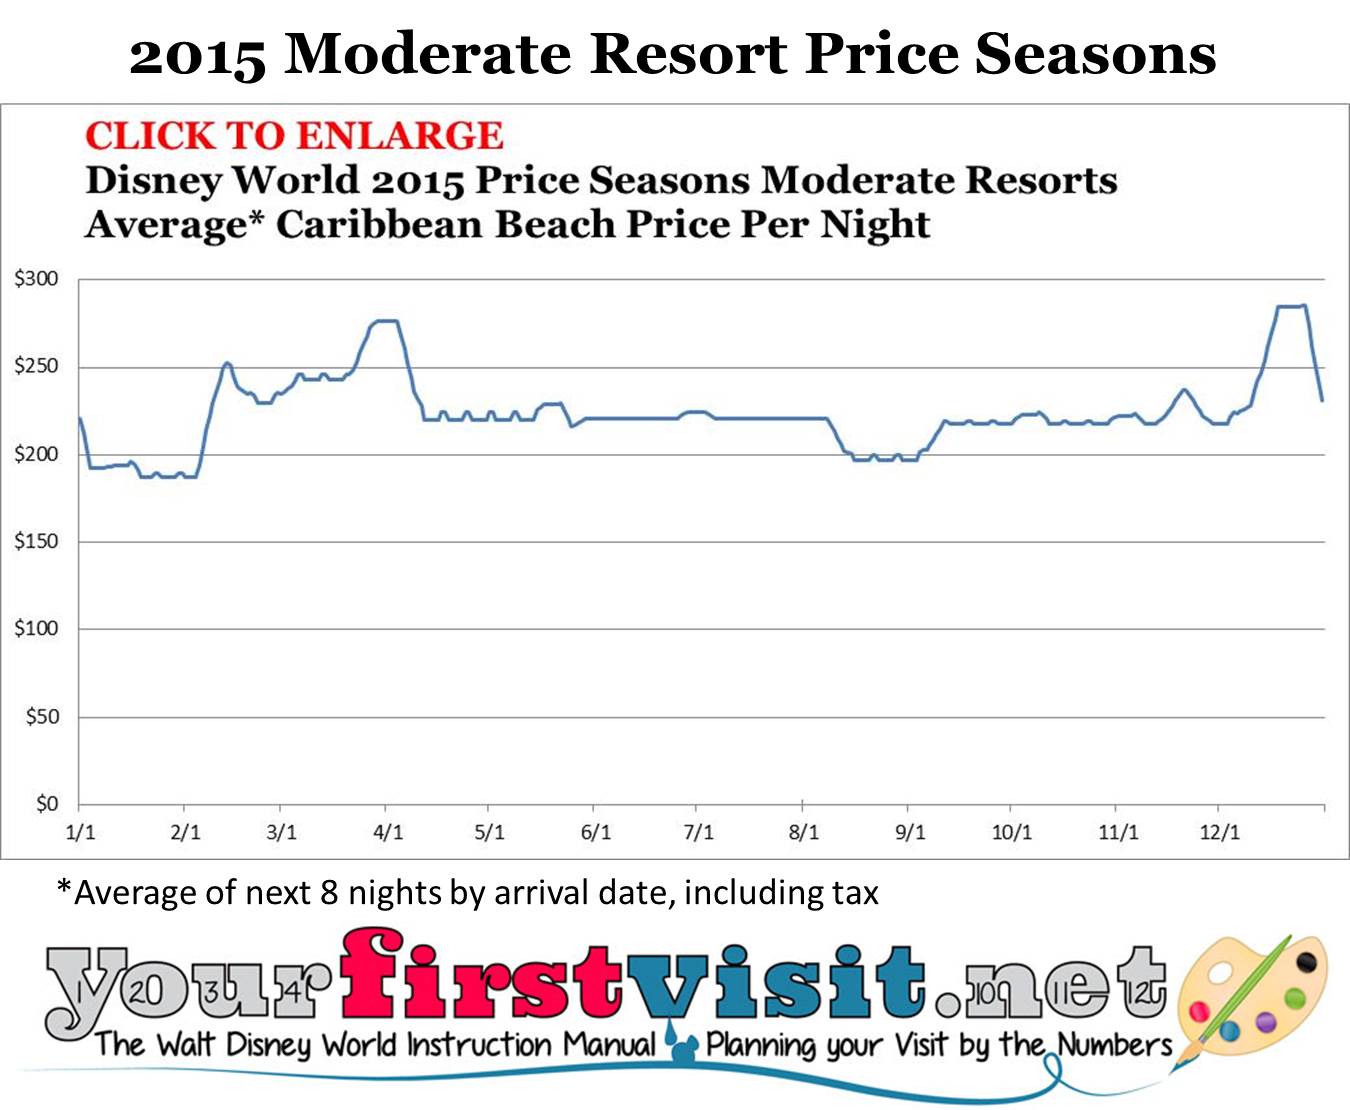 Disney World 2015 Moderate Resort Price Seasons from yourfirstvisit.net